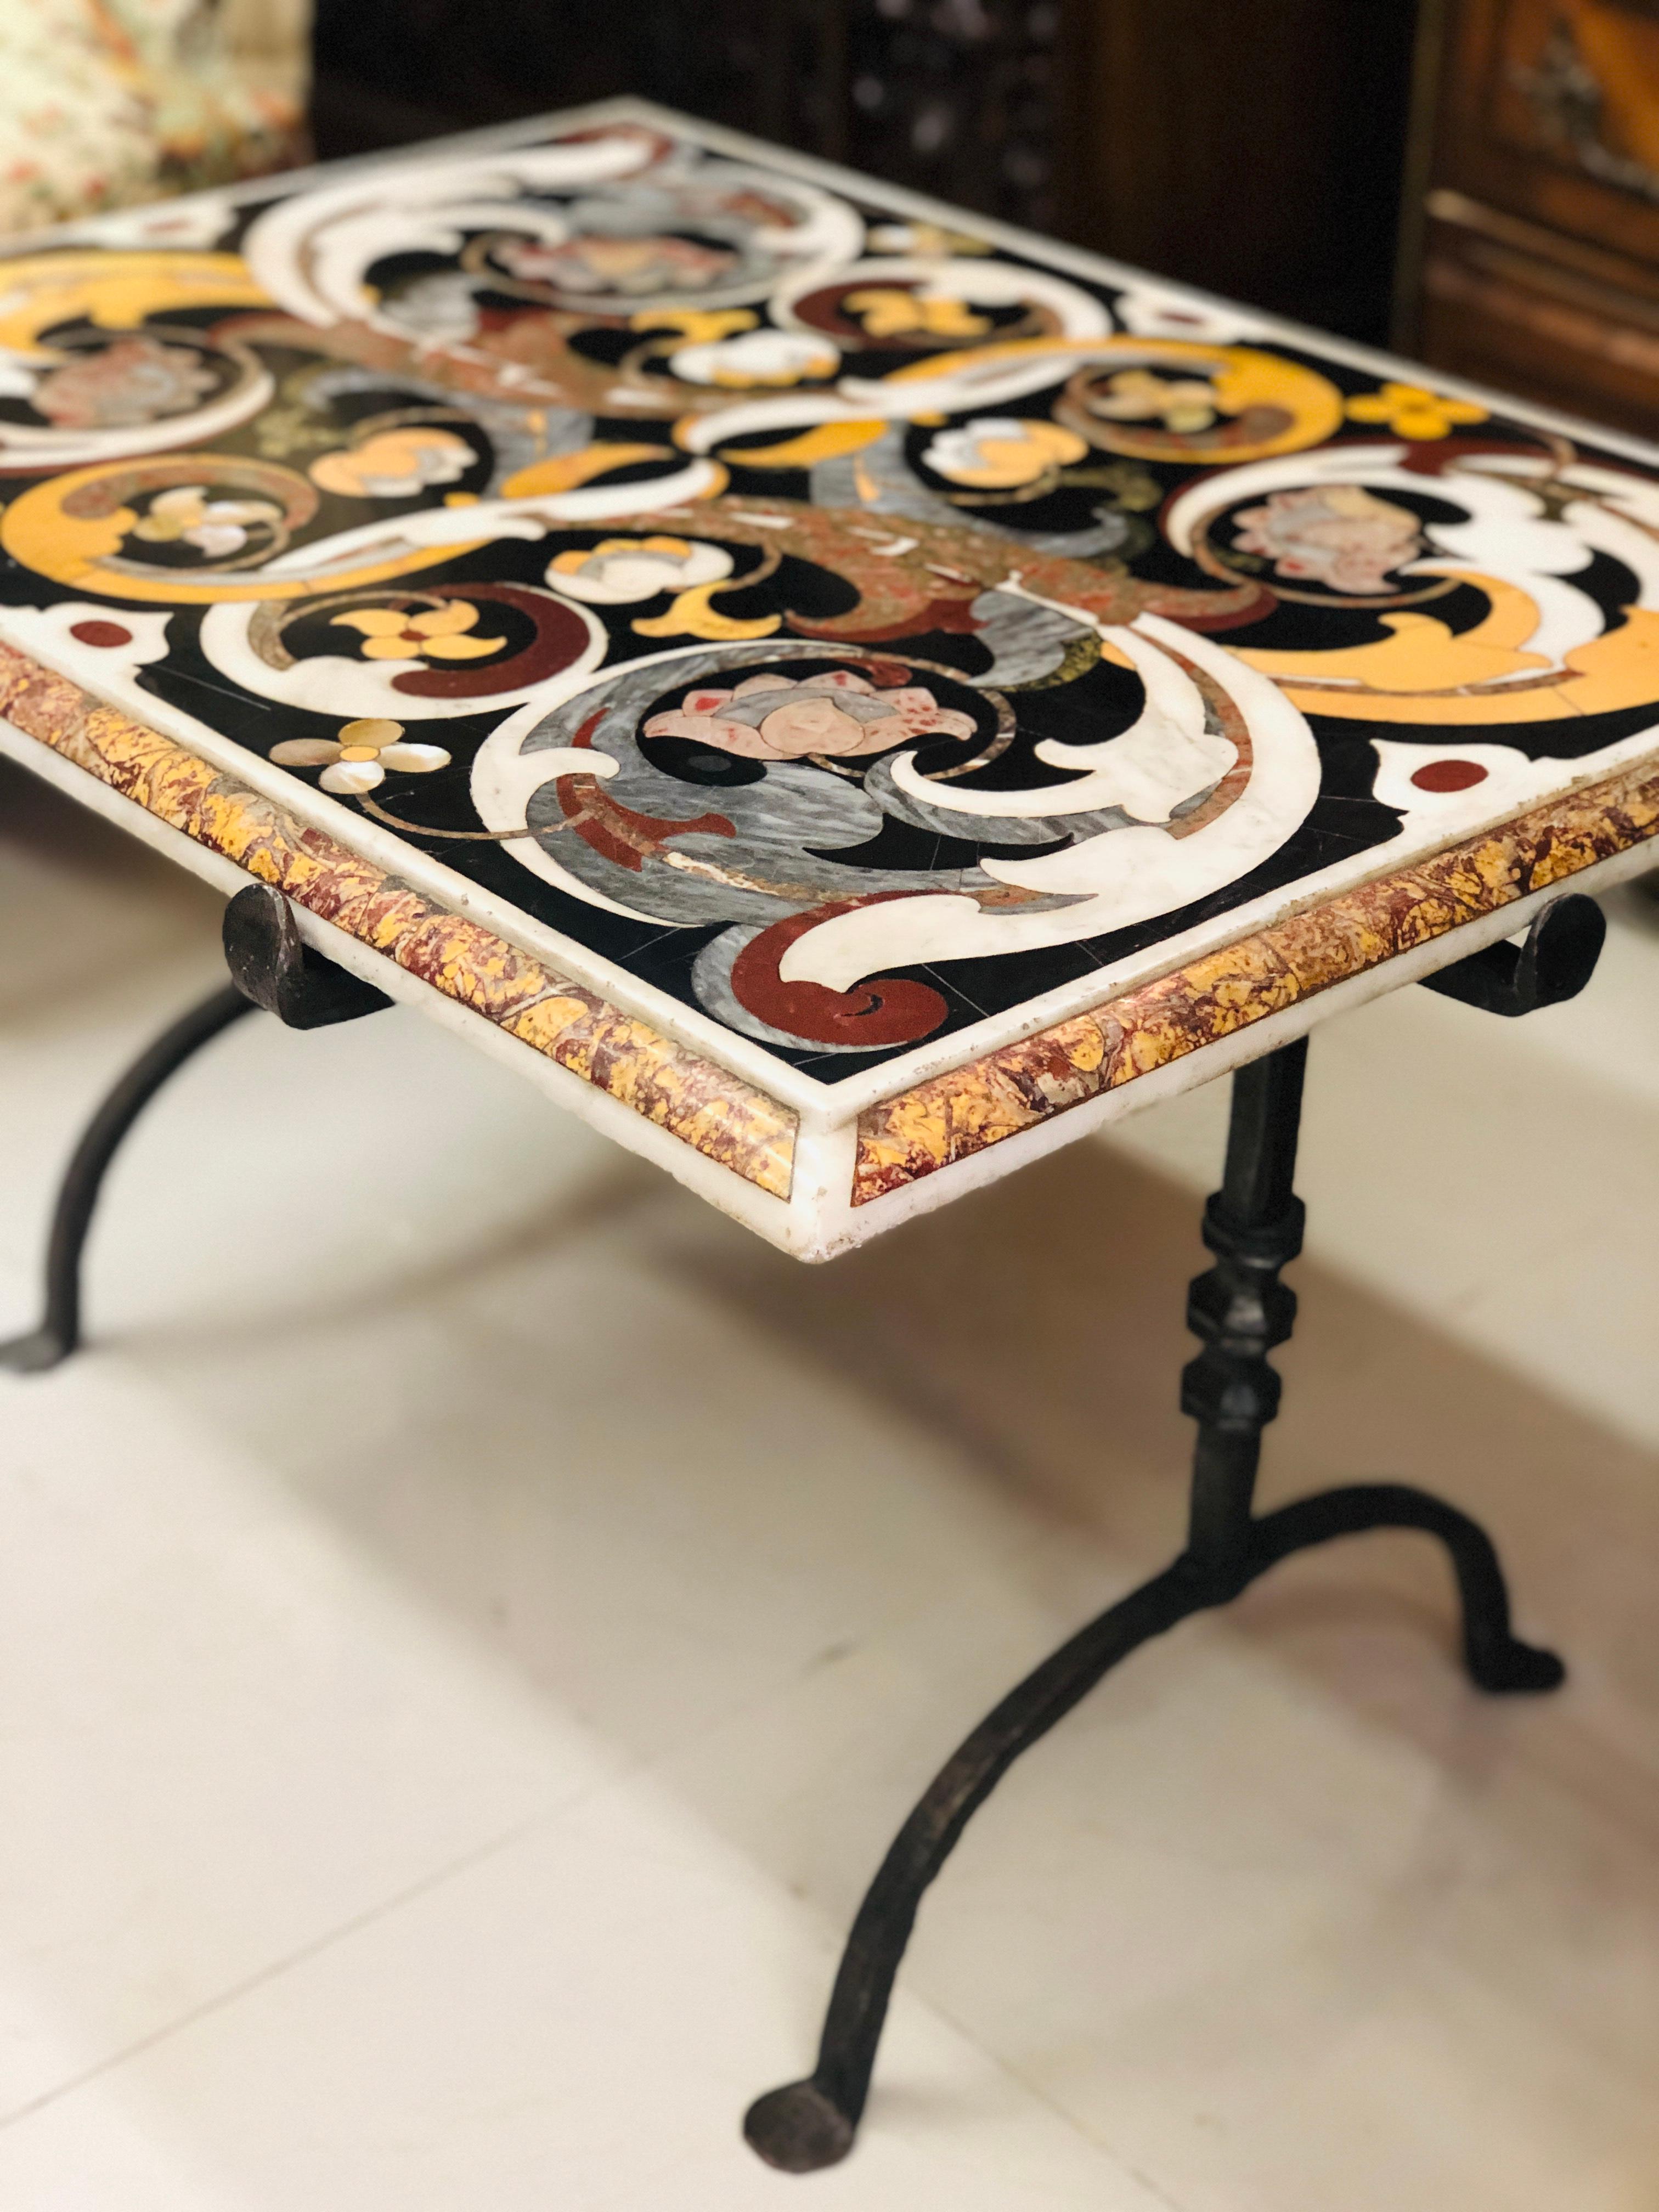 Seltener Tisch mit Intarsien aus mehrfarbigem Marmor auf schmiedeeisernen Beinen.
Hergestellt im 17. Jahrhundert im typisch florentinischen Stil mit vielen floralen Motiven auf schwarzem Grund.